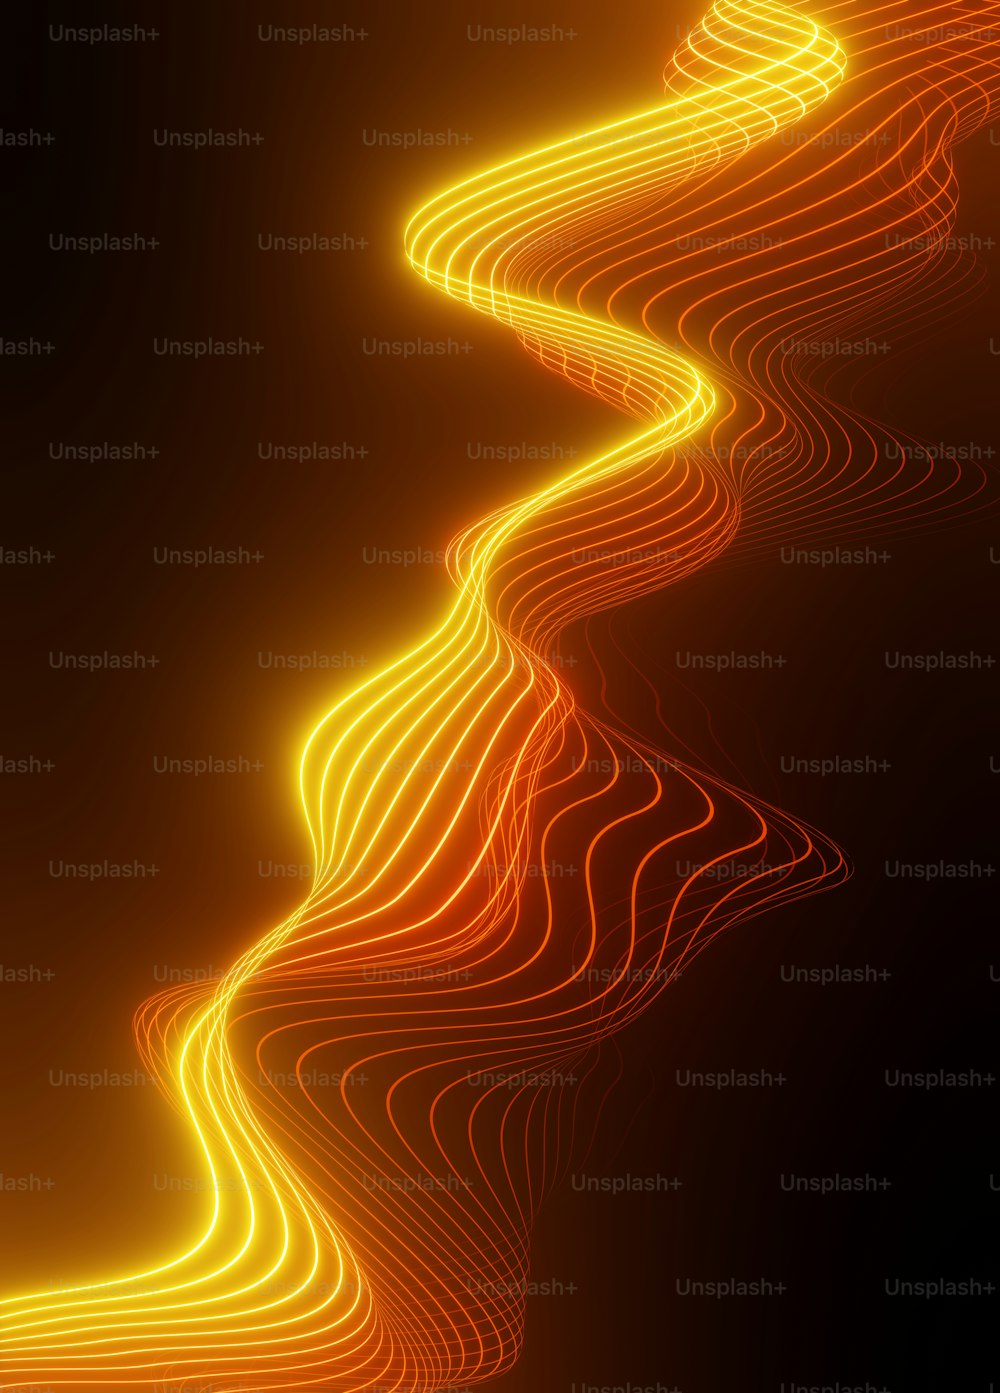 Une image abstraite d’une ligne orange ondulée